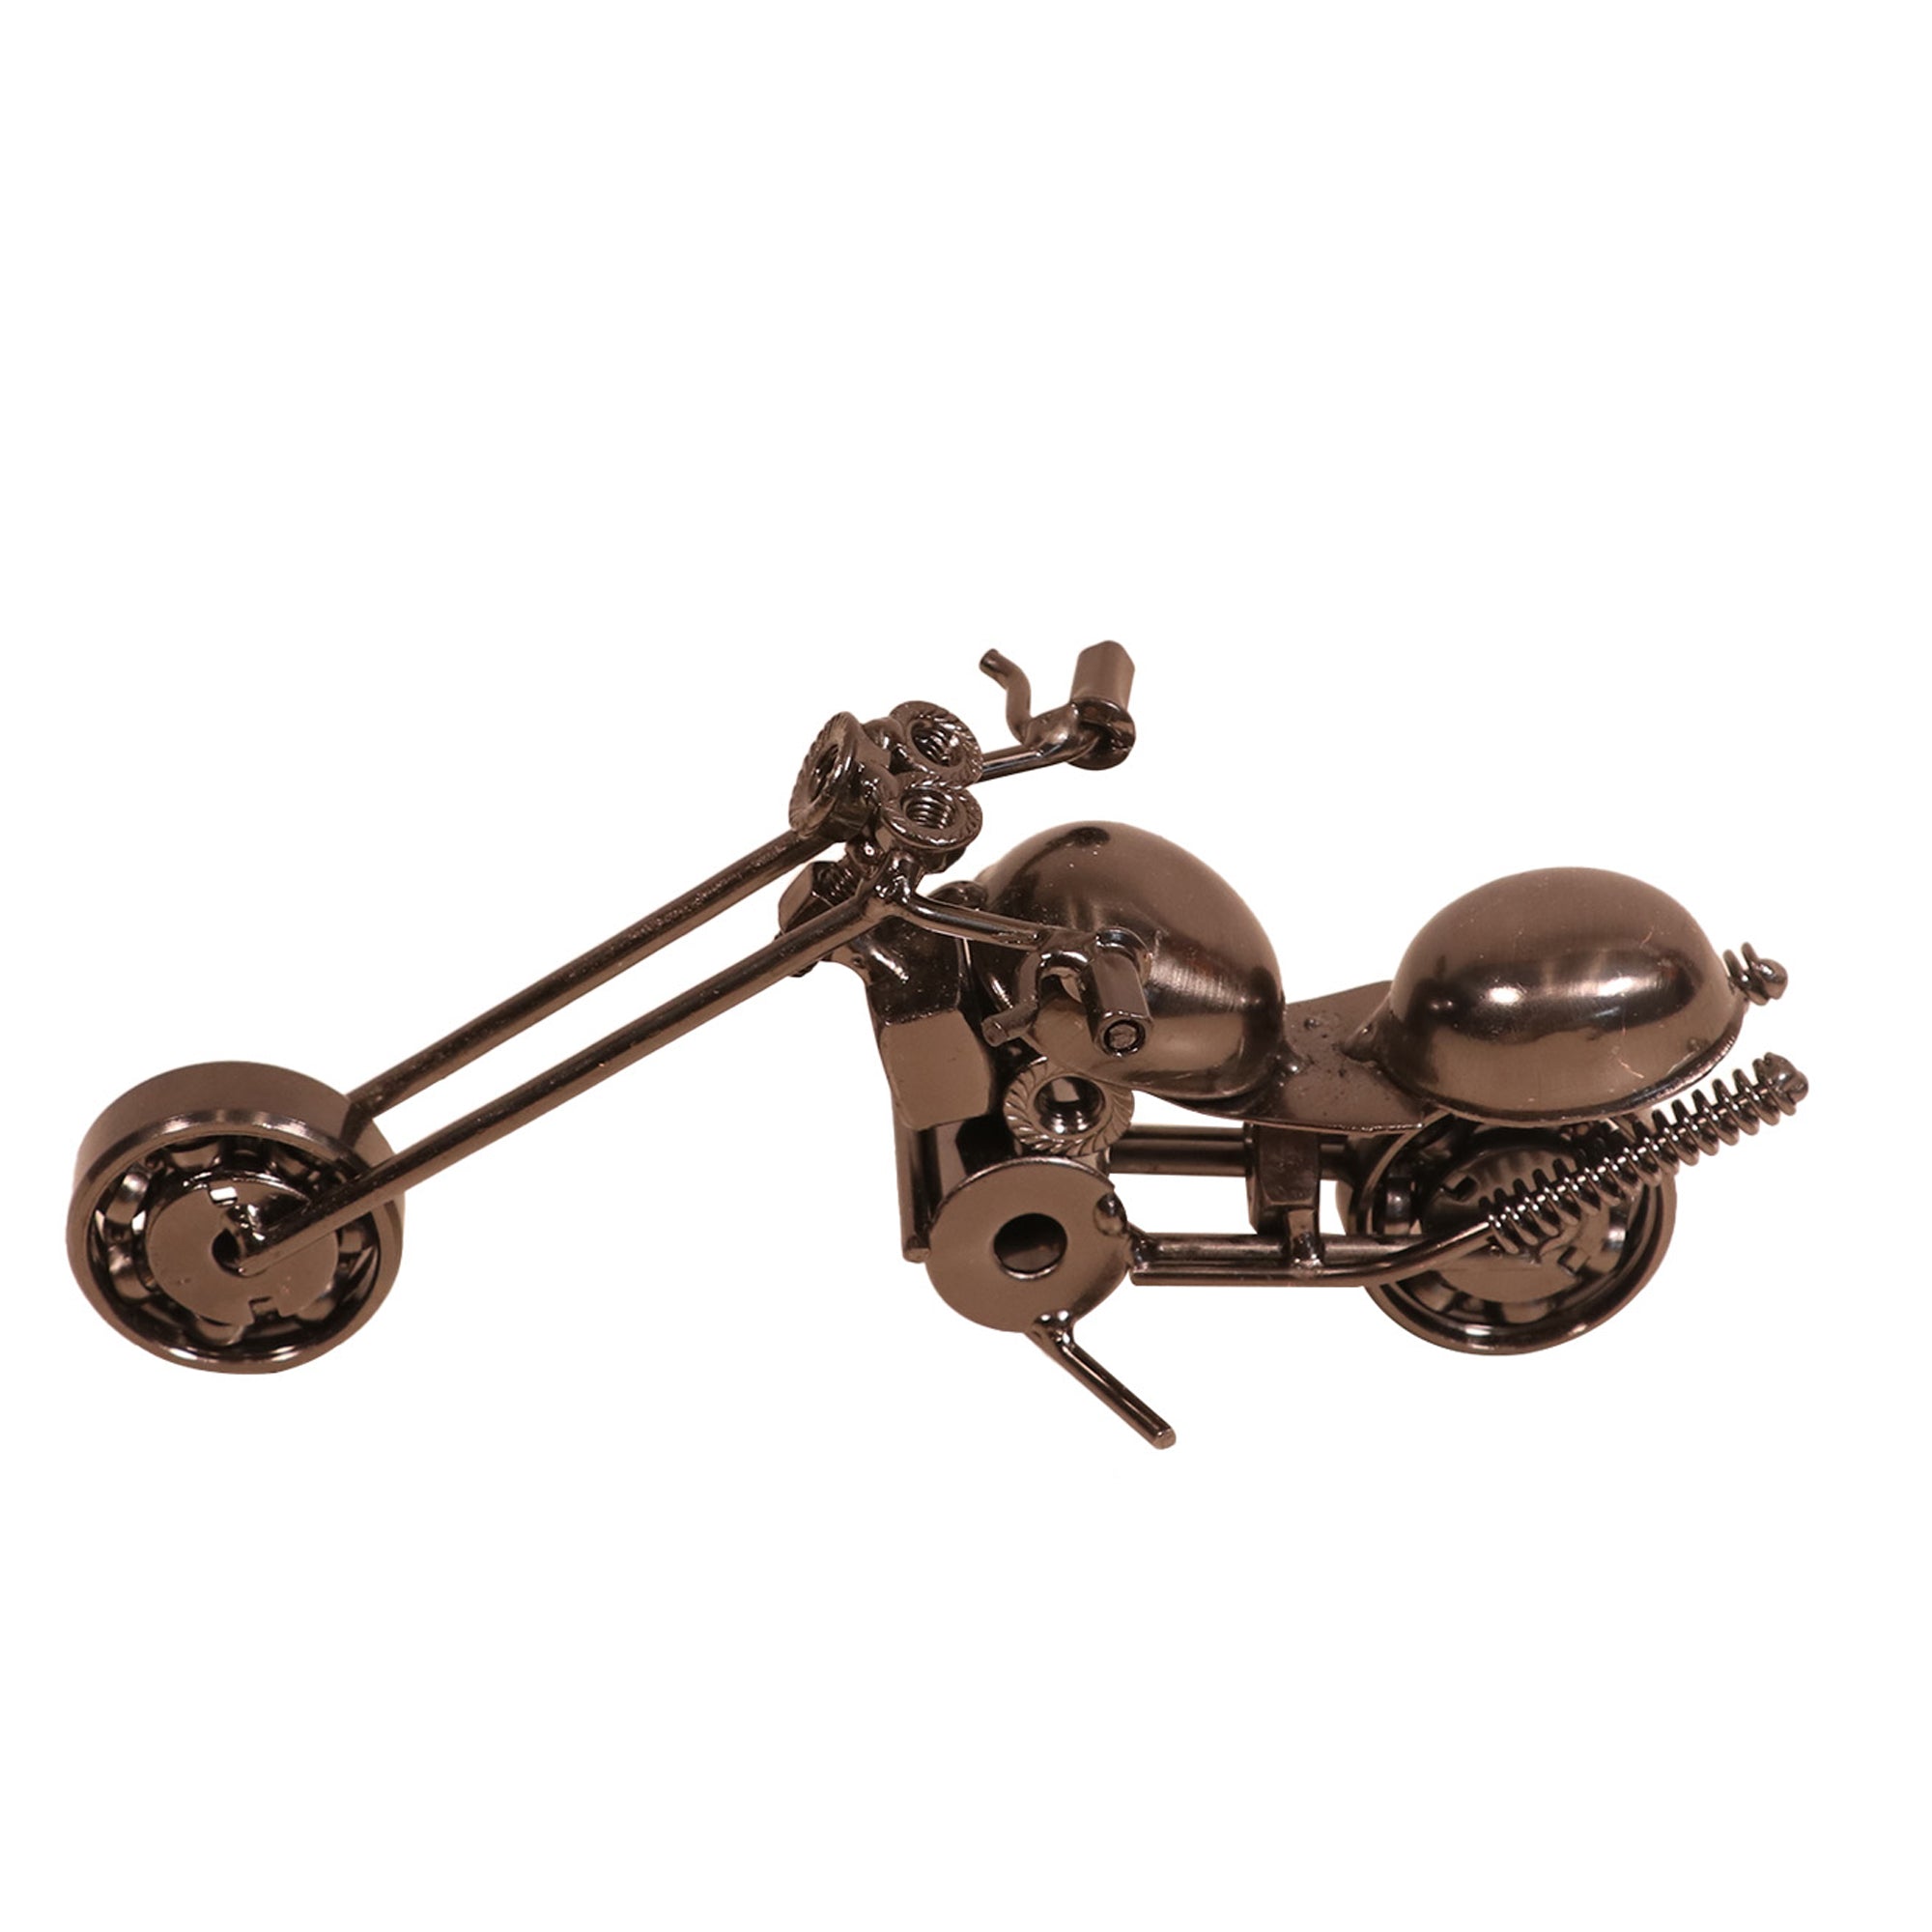 Vintage Indian Bike Vehicle figurine